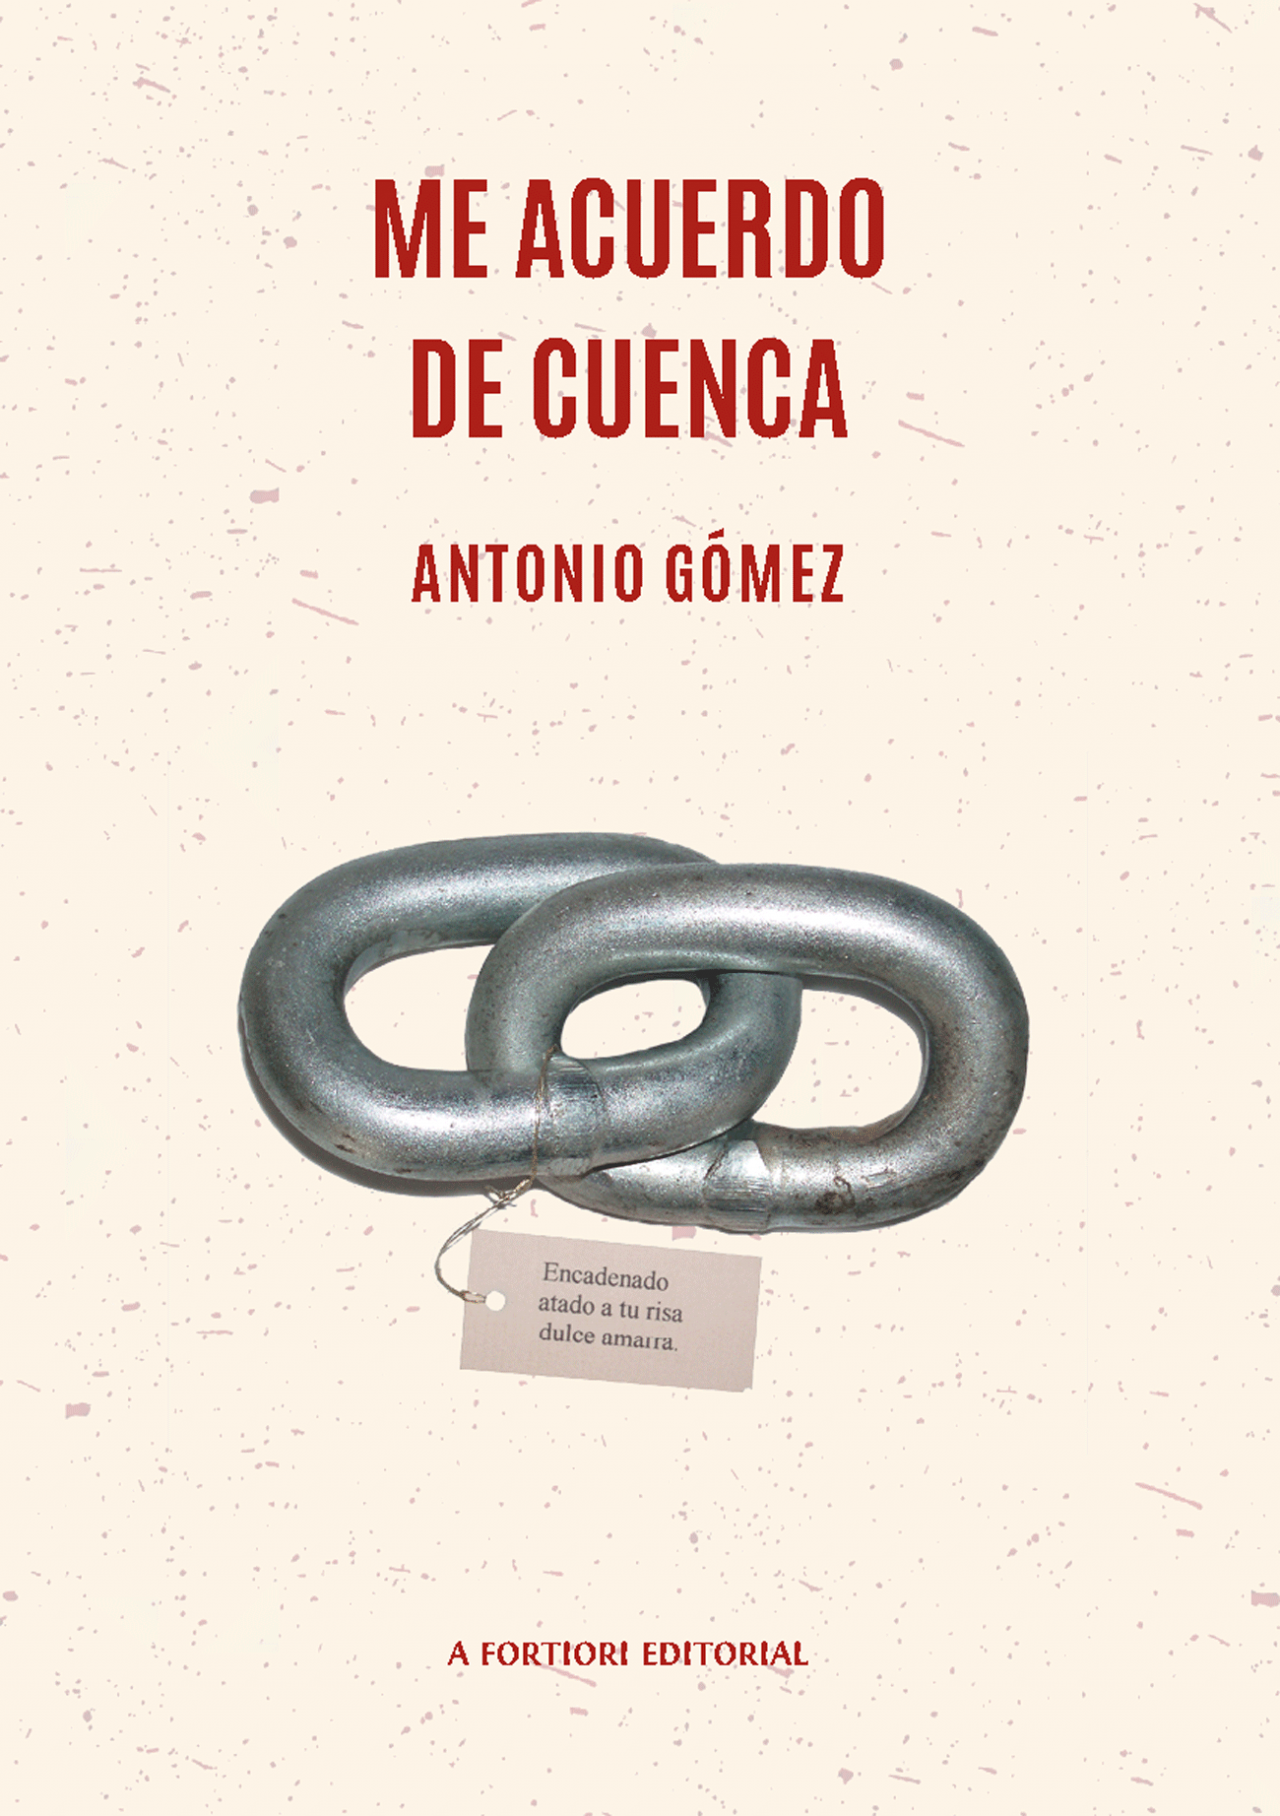 Me acuerdo de Cuenca, Antonio Gómez. A Fortiori Editorial